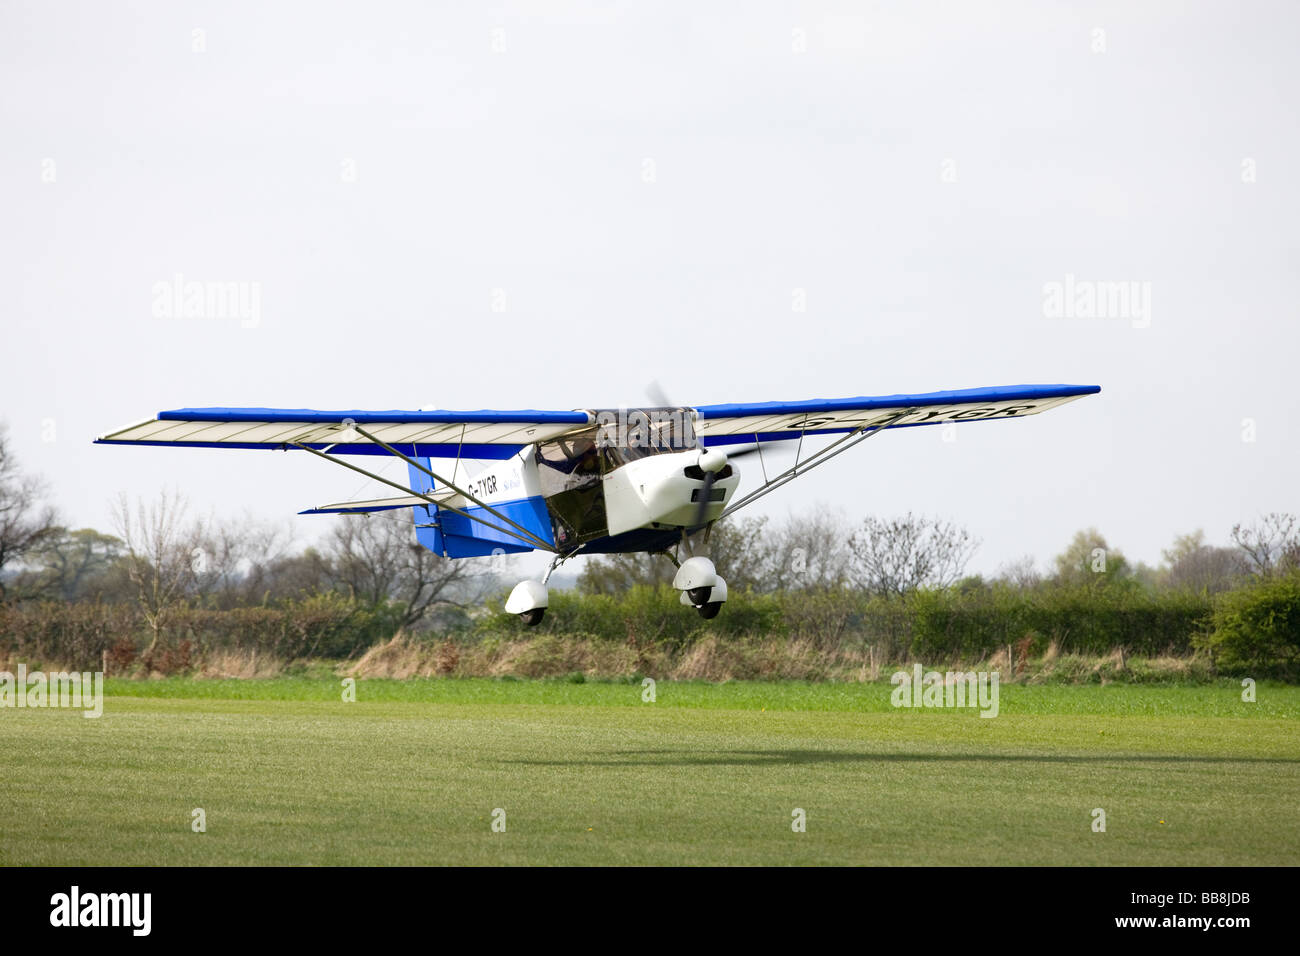 Skyranger 912S (i) G-TYGR landing at Breighton Airfield Stock Photo